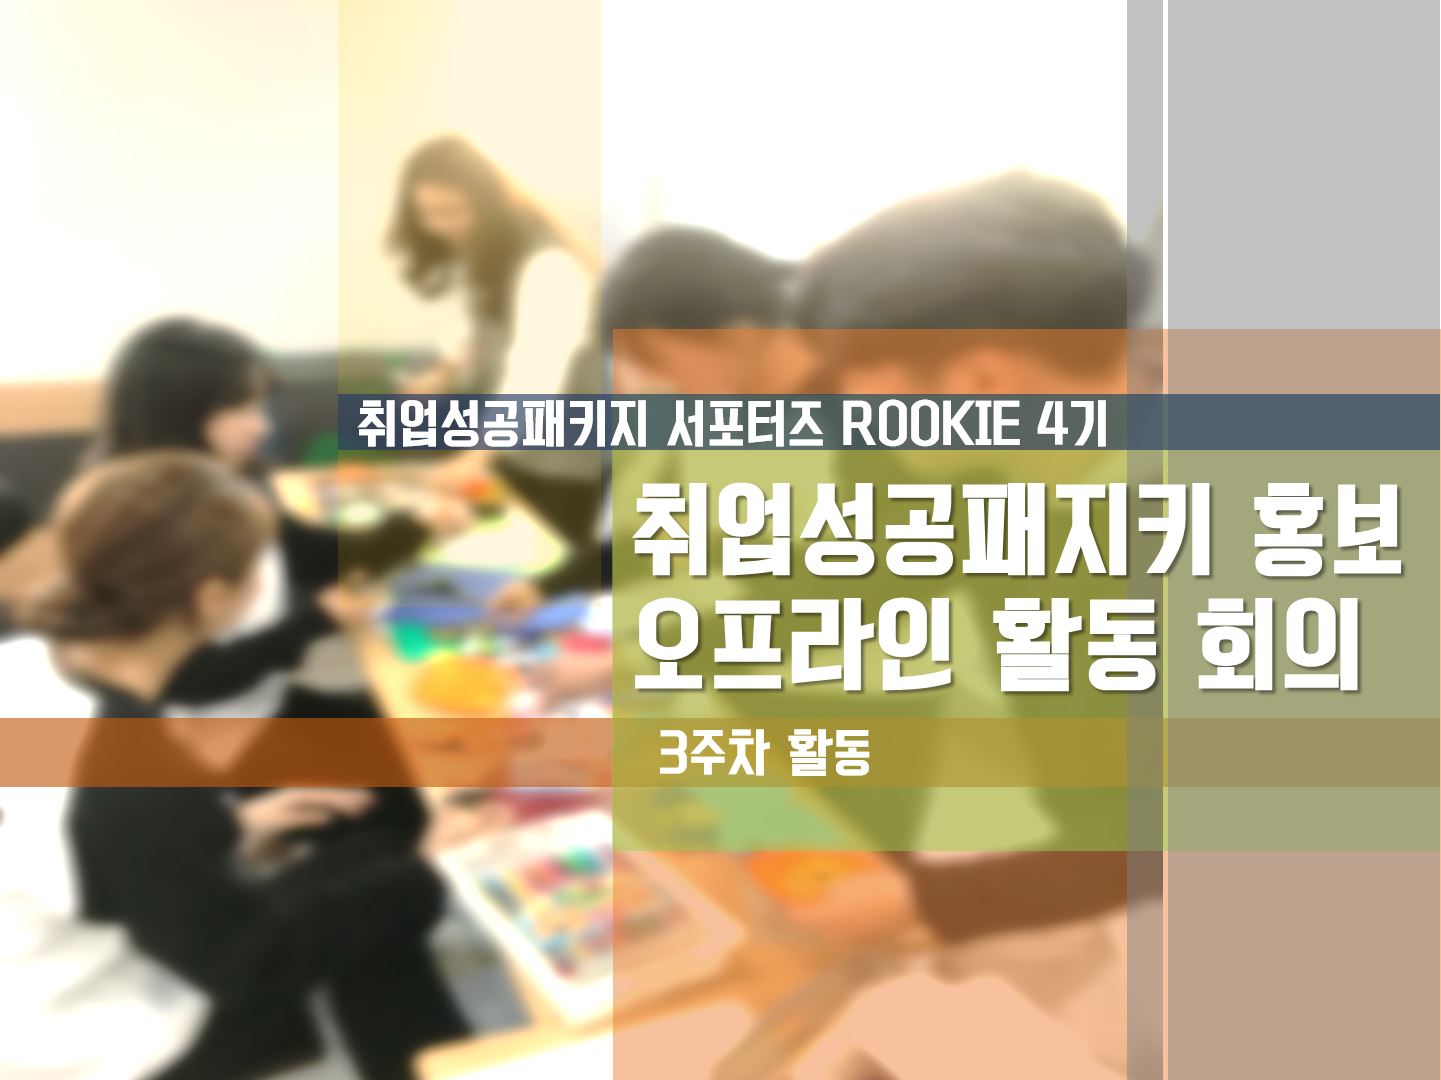 [ROOKIE 4기] - 3주차 취업성공패키지 홍보 오프라인 활동 회의 및 홍보물 준비